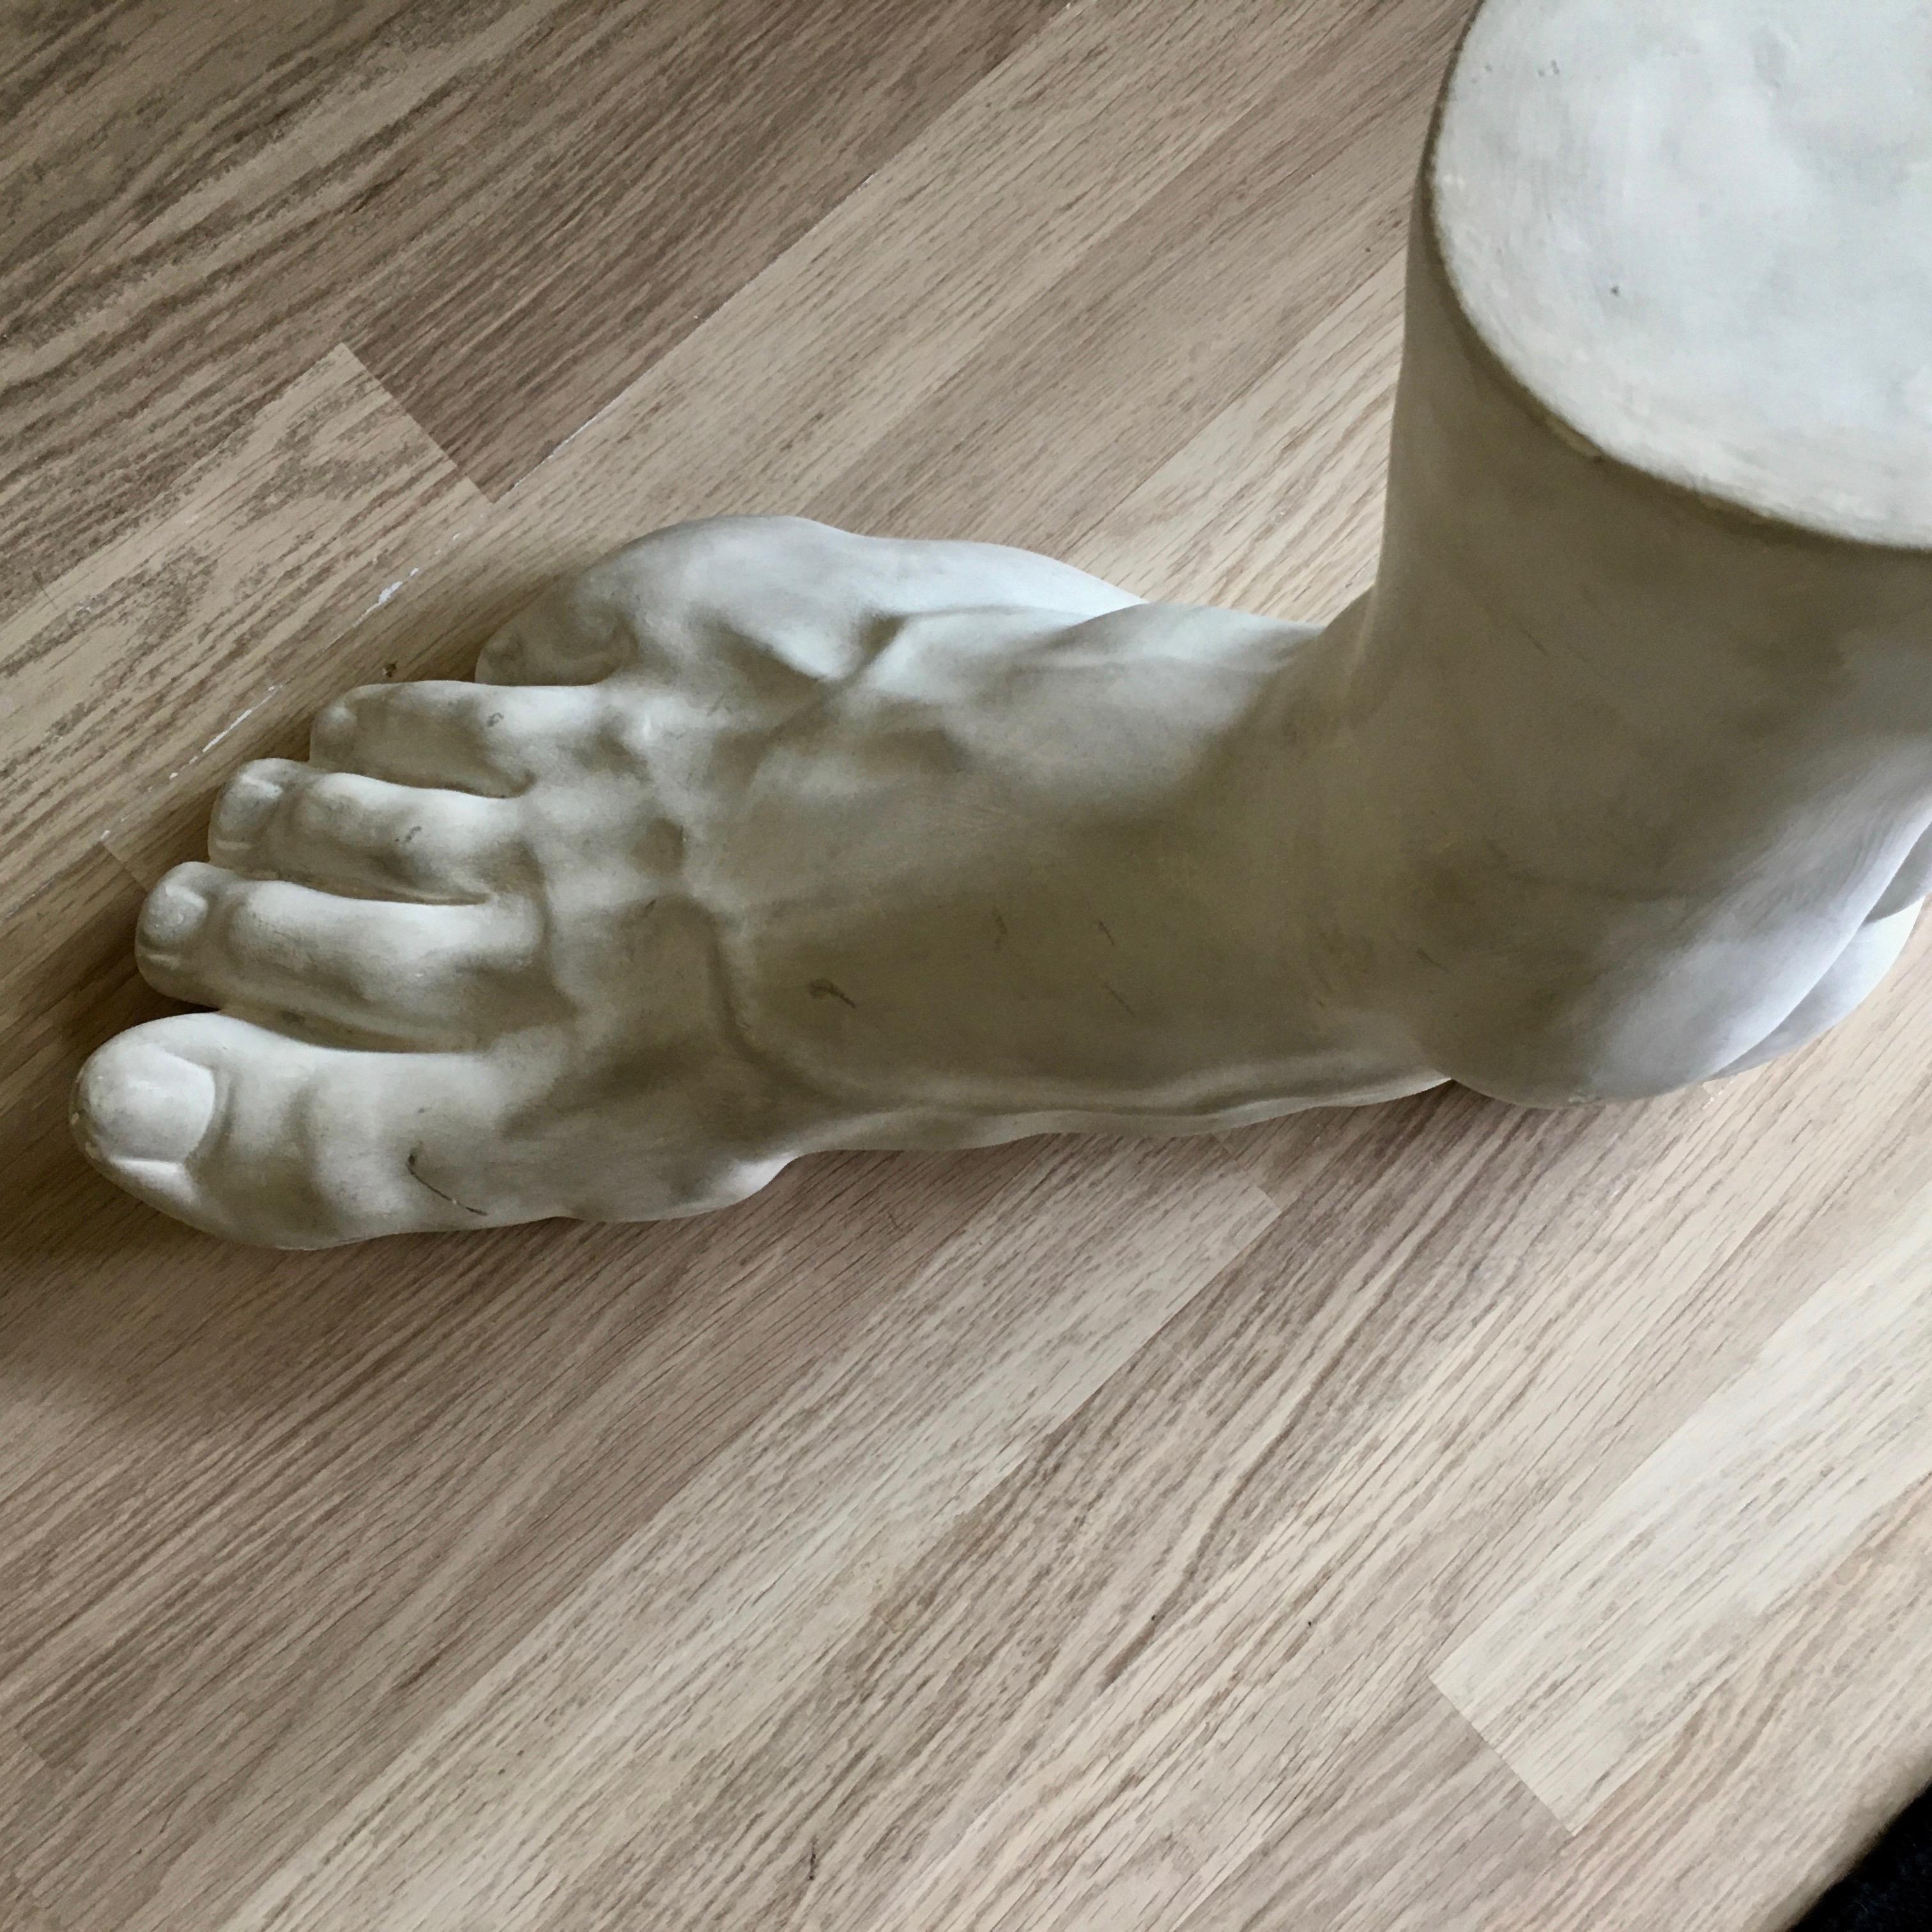 hercules feet